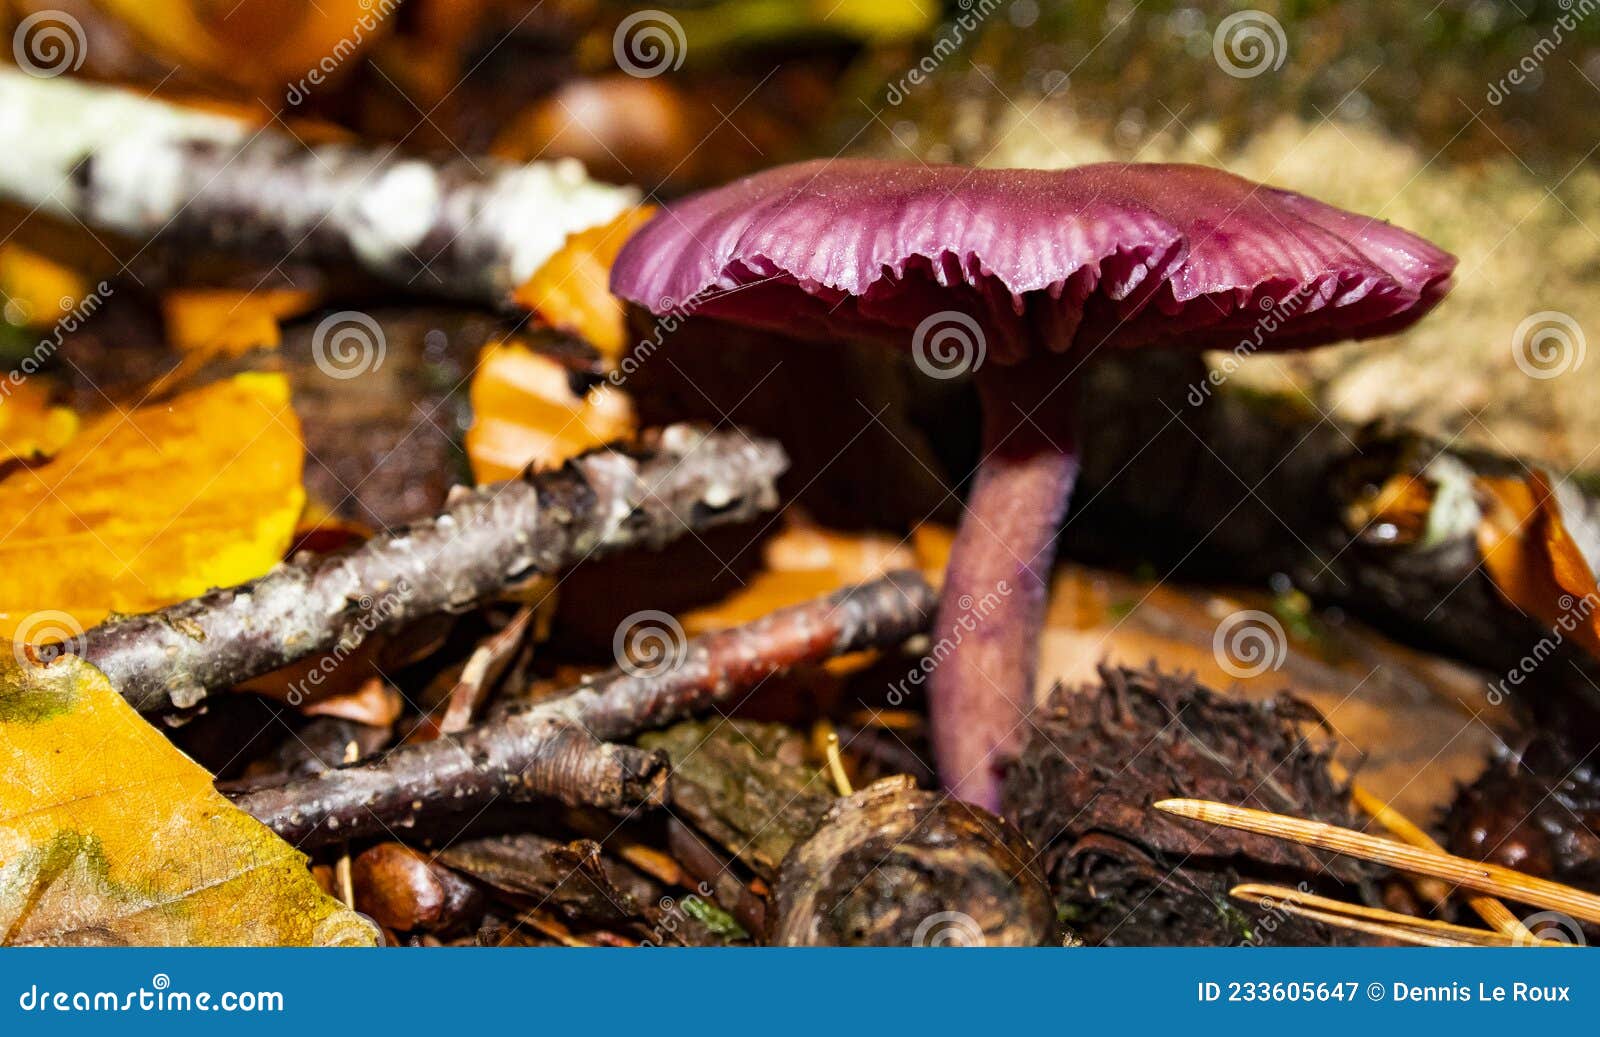 几枚紫色的小蘑菇长在枯萎的树干上植物素材设计